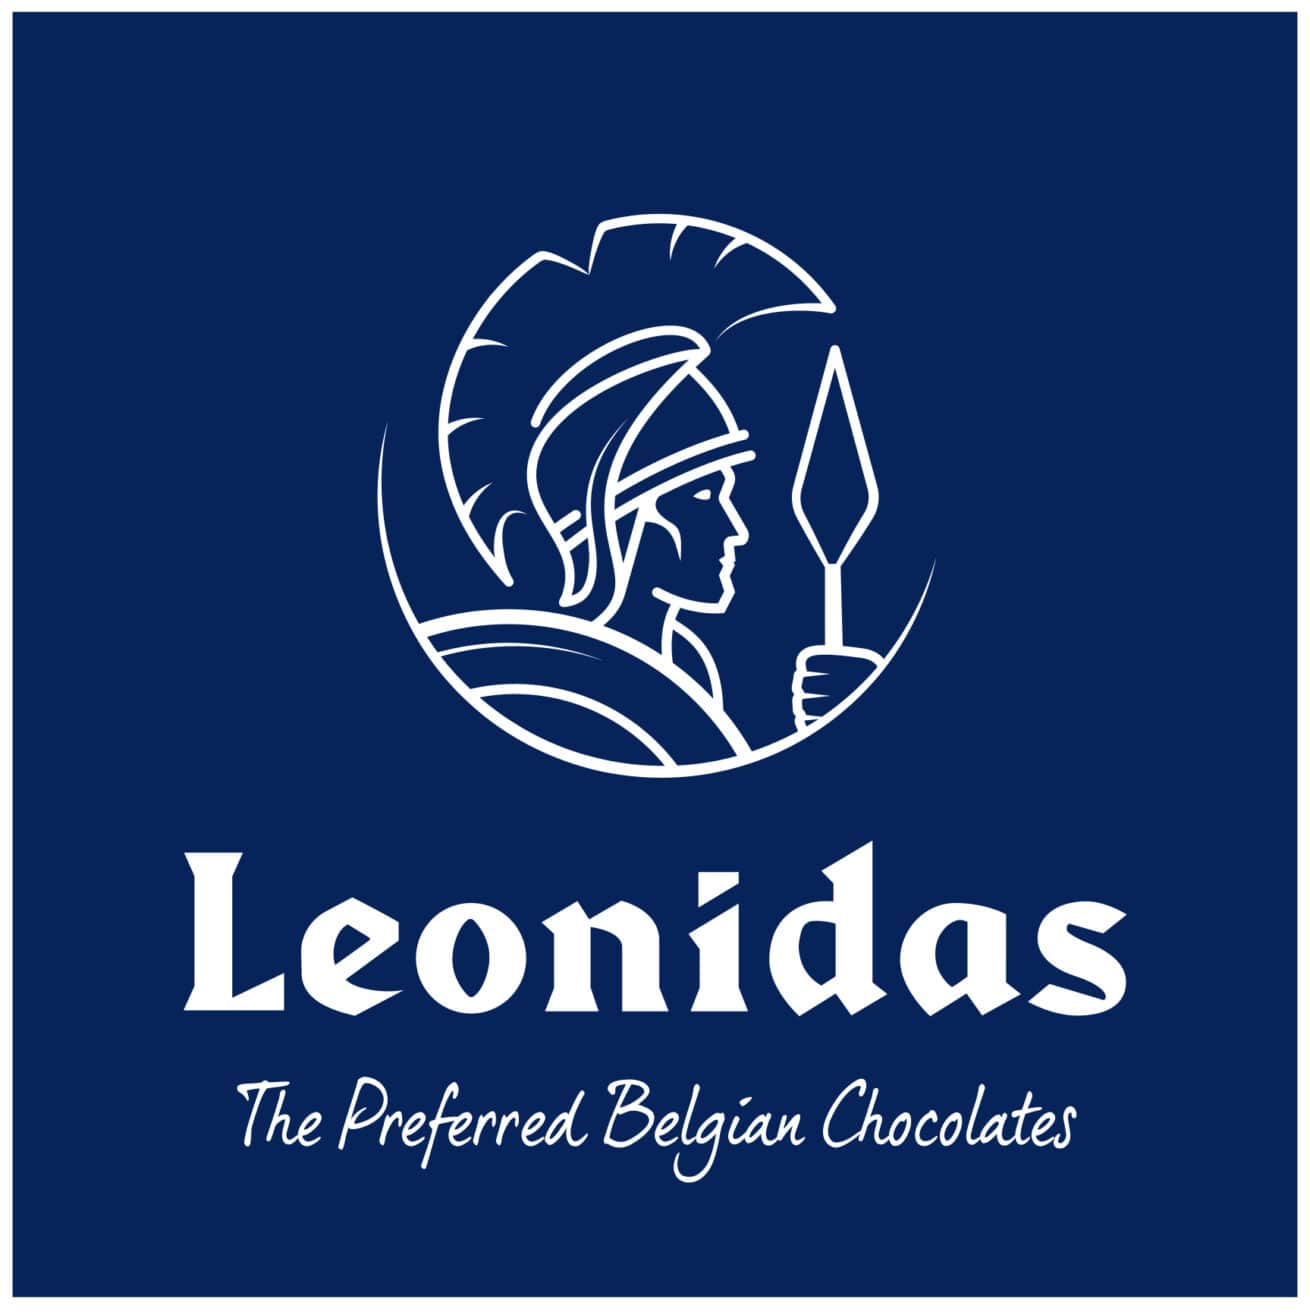 Leonidas est une entreprise belge de chocolat qui confectionne des pralines et d'autres produits au chocolat.